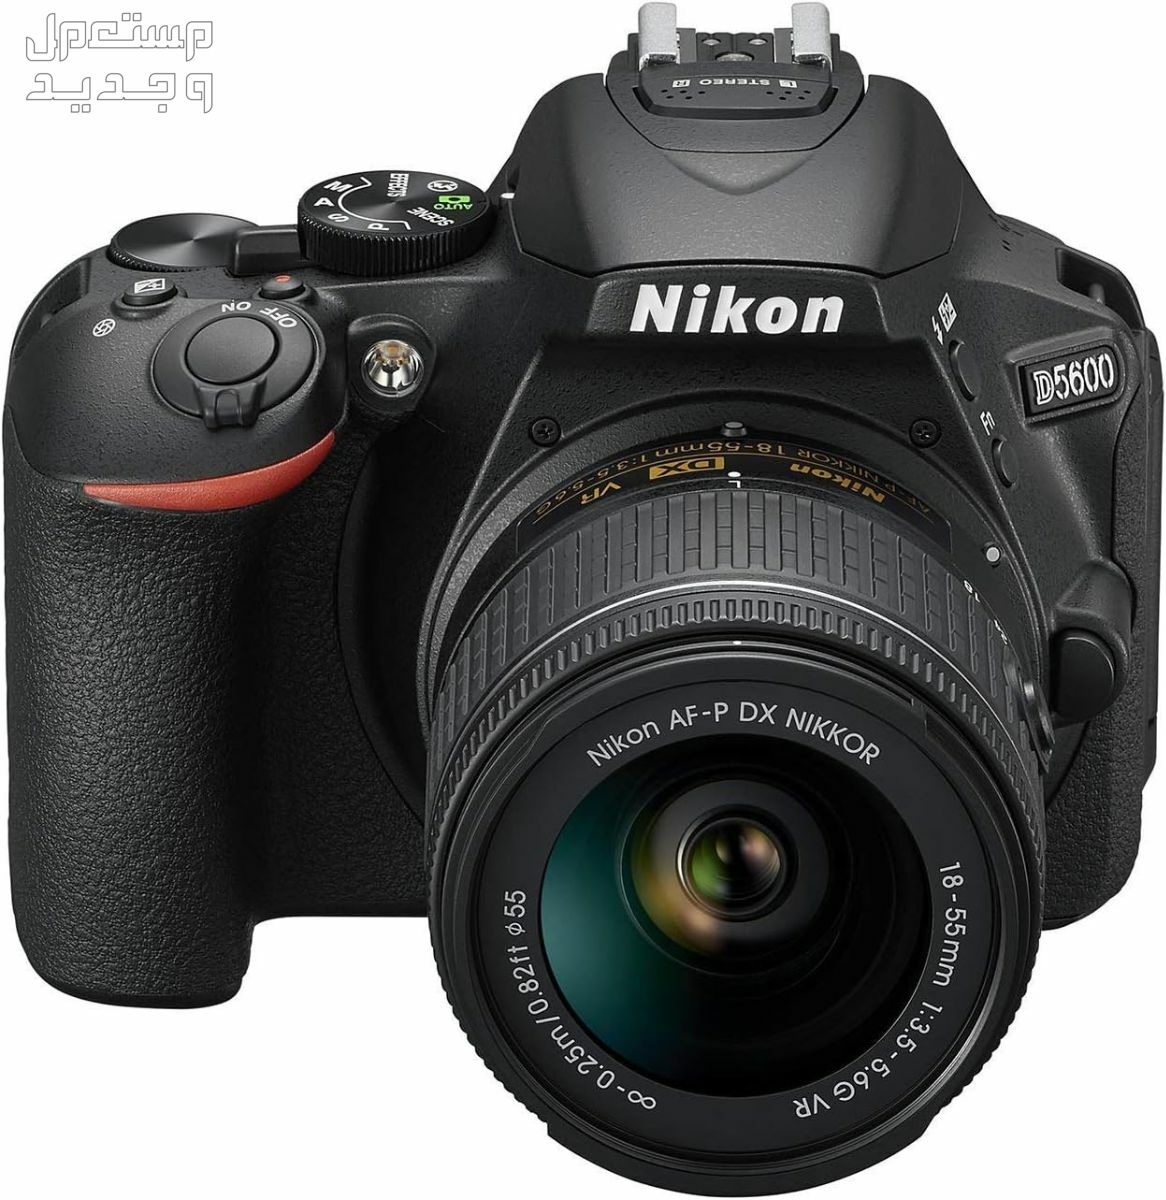 10 كاميرات تصوير ماركات عالمية بأسعار رخيصة في قطر سعر كاميرا Nikon D5600